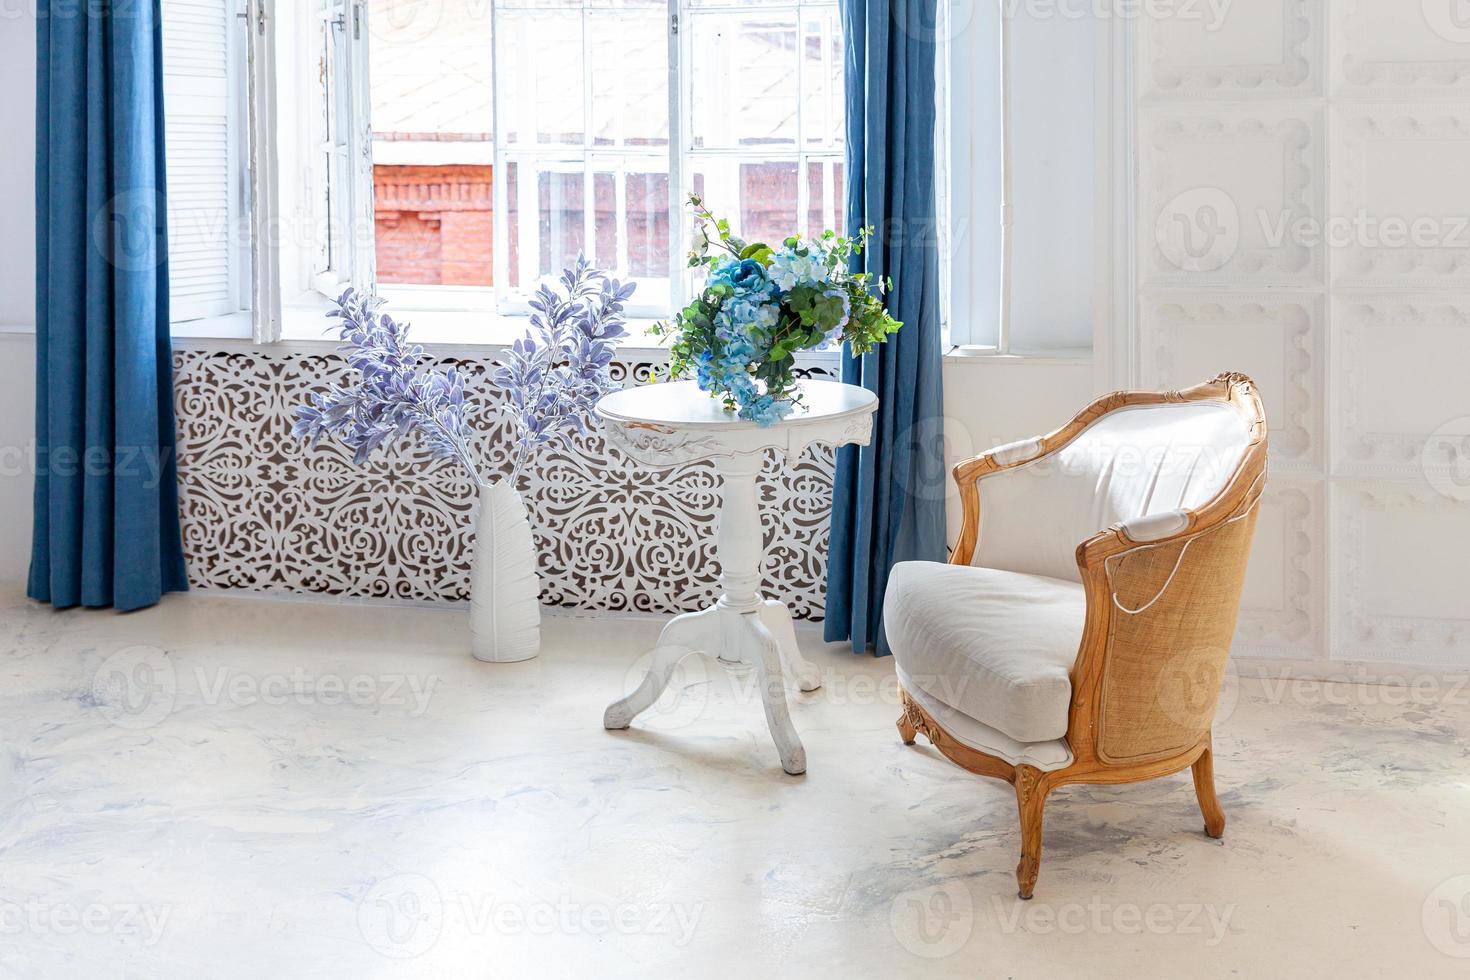 hermoso y lujoso dormitorio interior clásico, blanco, brillante y limpio, de estilo barroco, con ventana grande, sillón y composición floral. foto